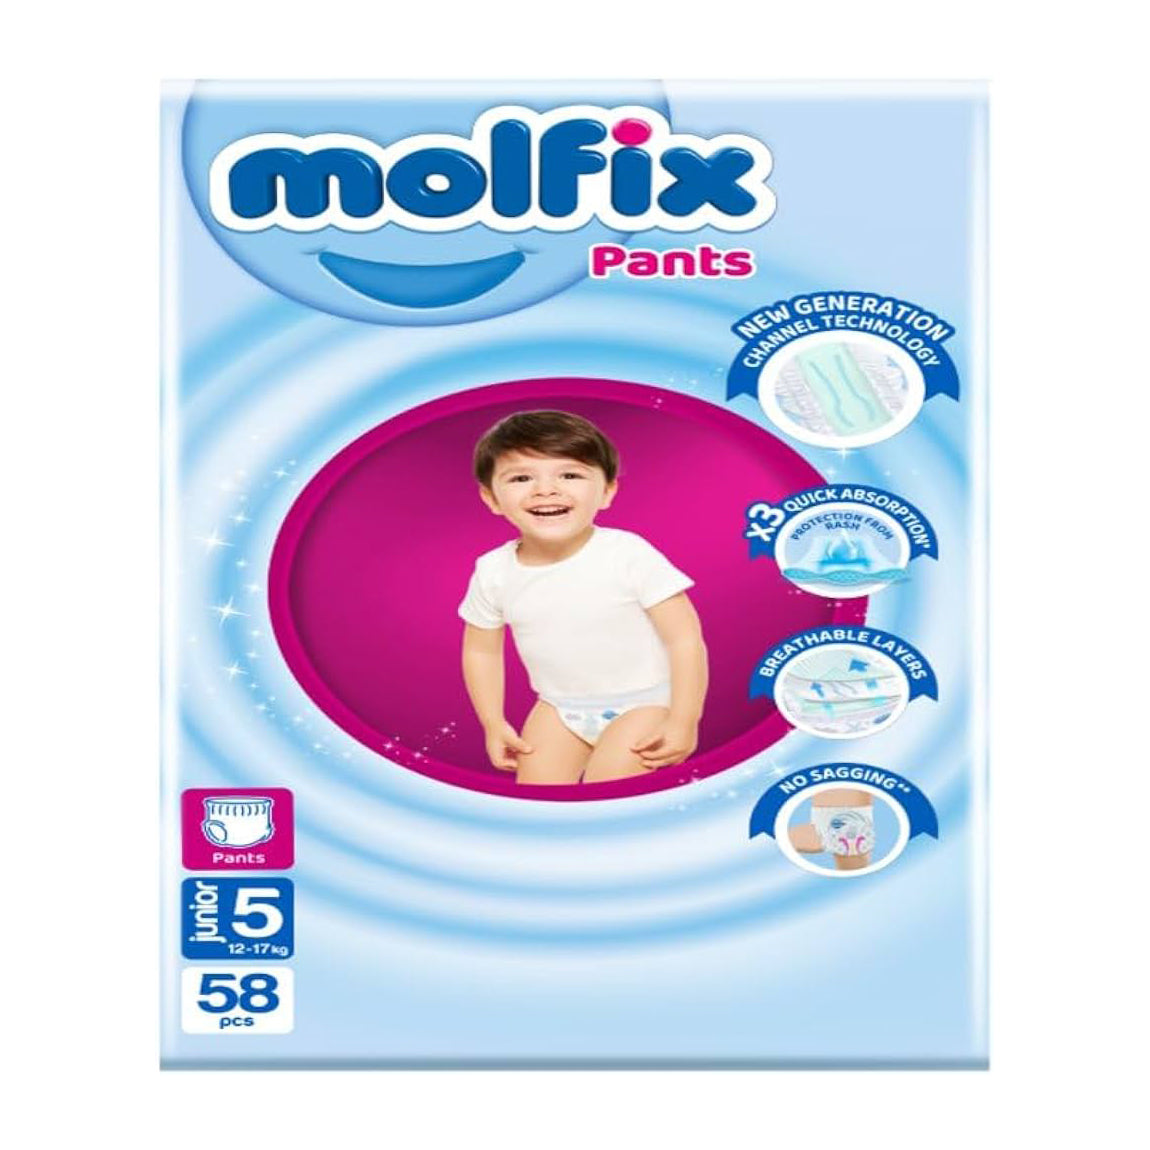 Molfix Pants Size (5) Junior 12-17kg - 58pcs